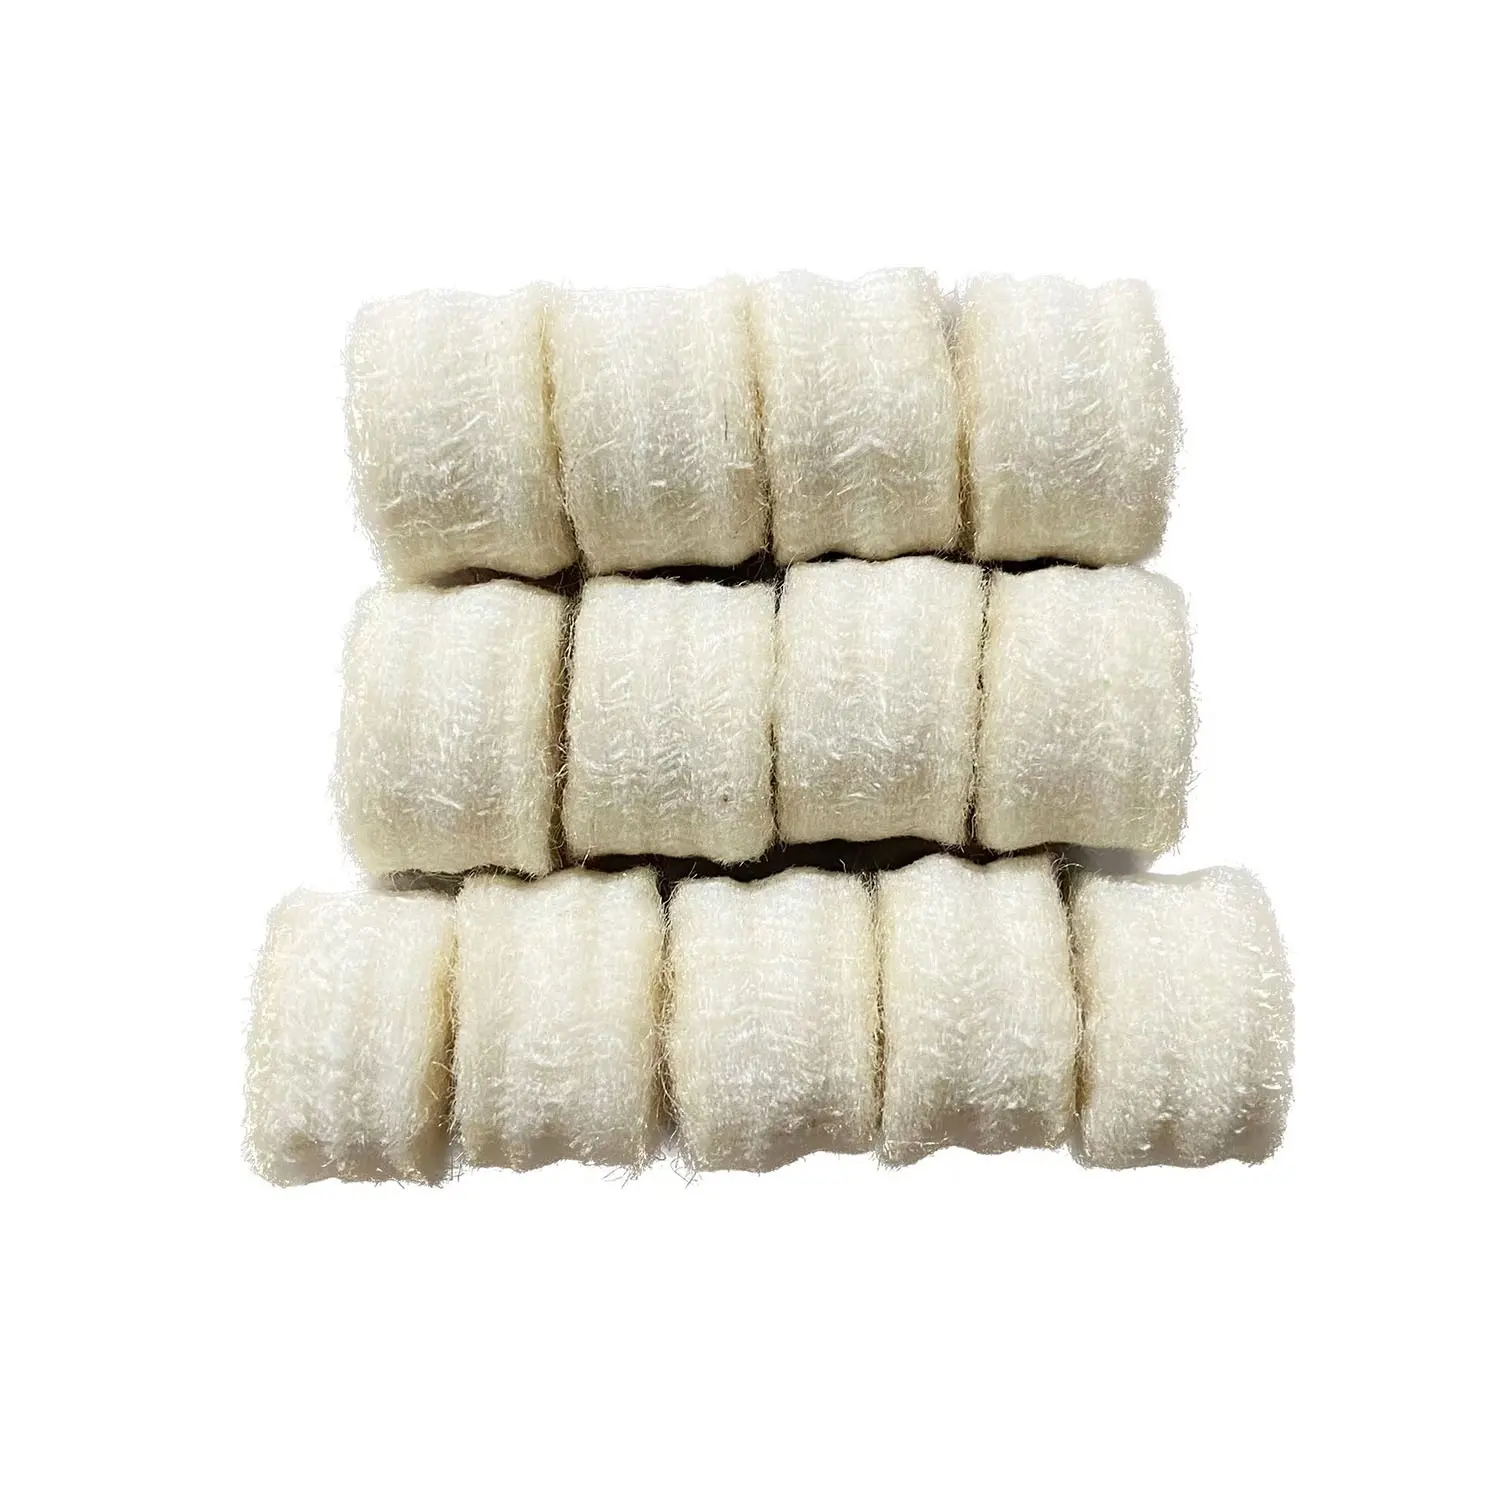 Filtro de fieltro de lana industrial absorbente de aceite mecánico resistente a altas temperaturas de algodón ignífugo resistente al agua y al aceite